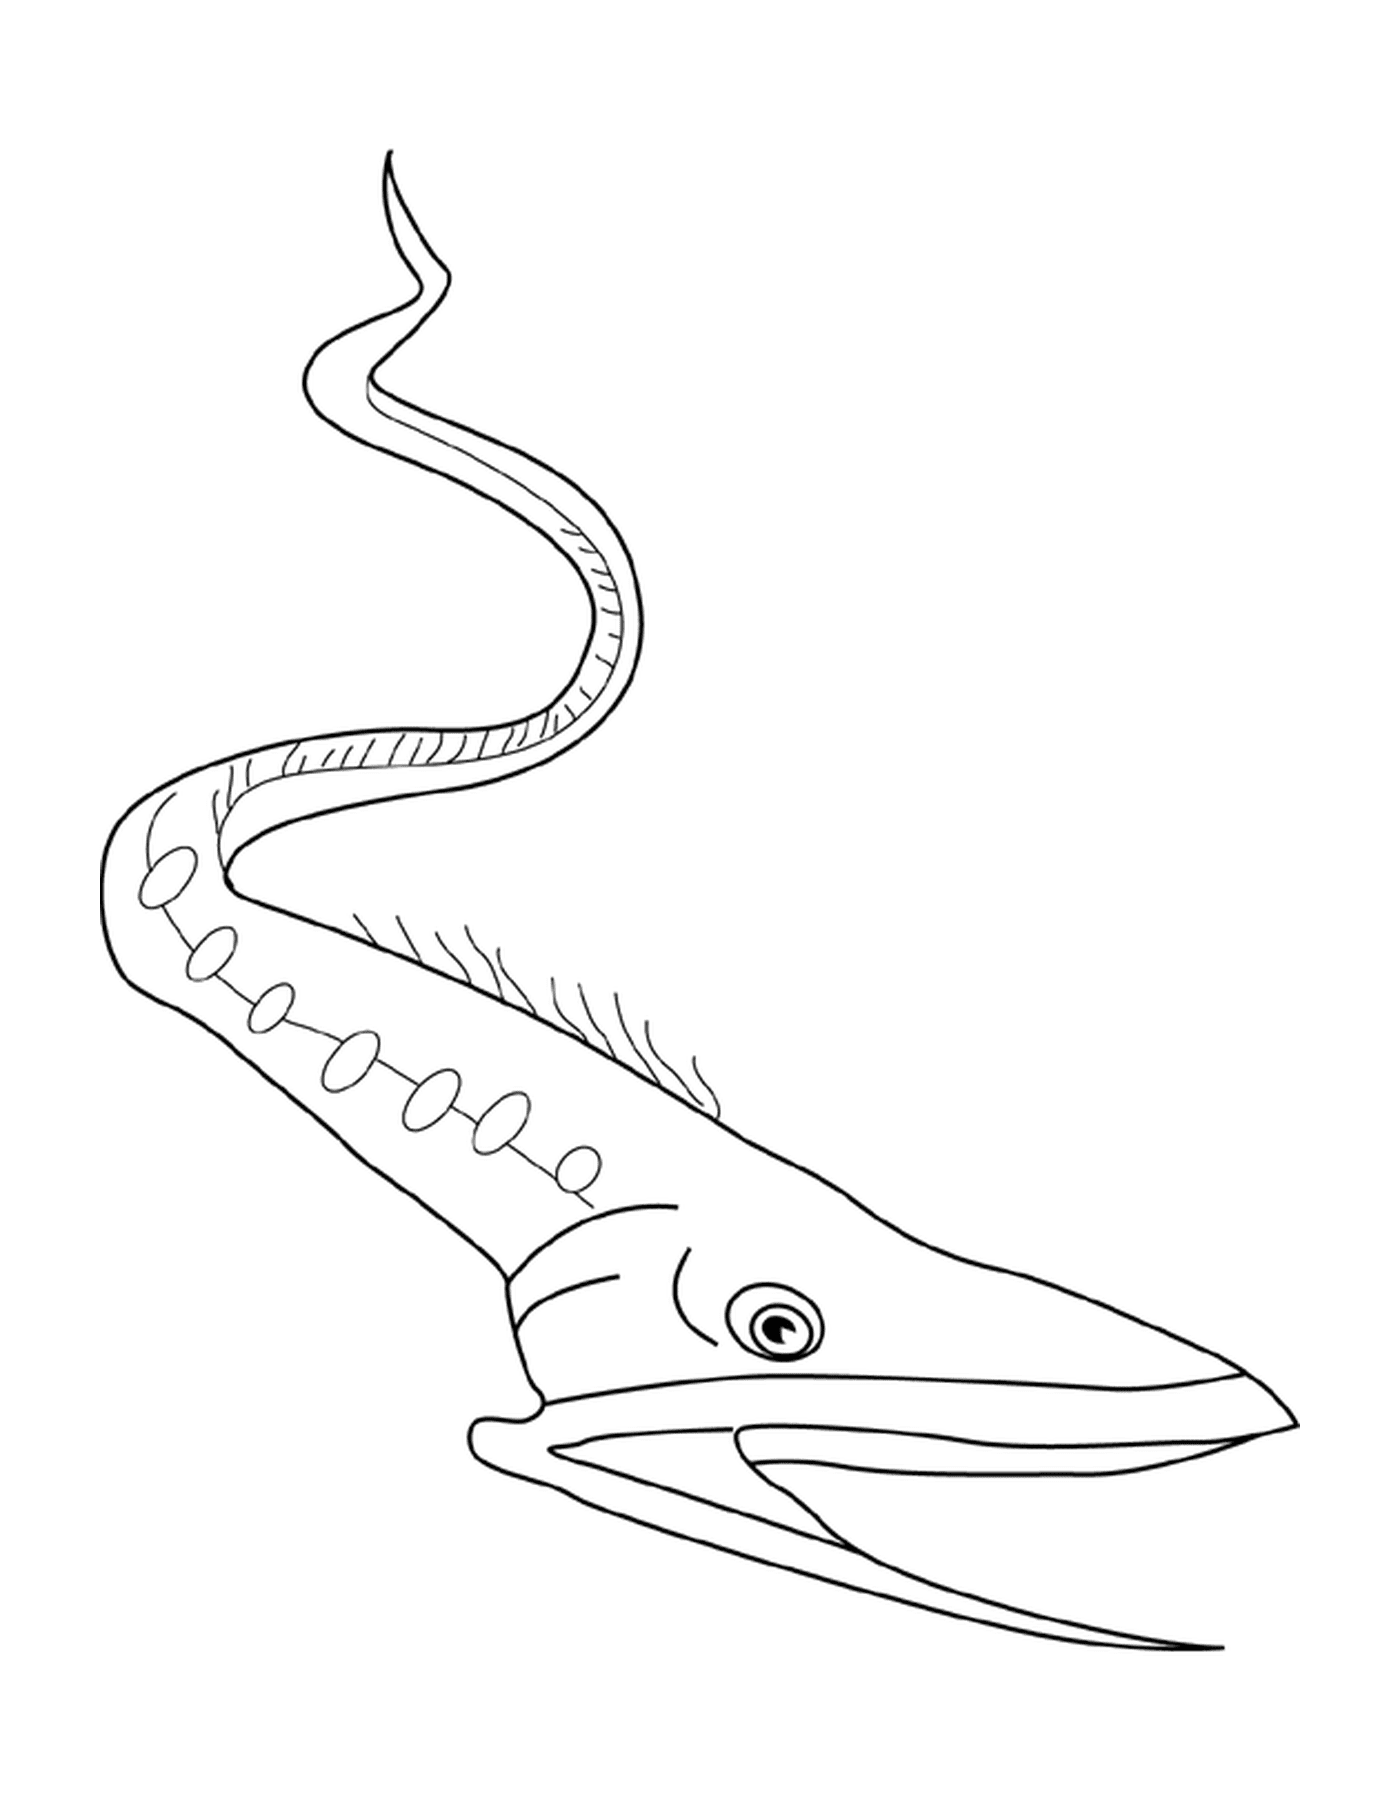  Gulper anguilla simile a un pesce 